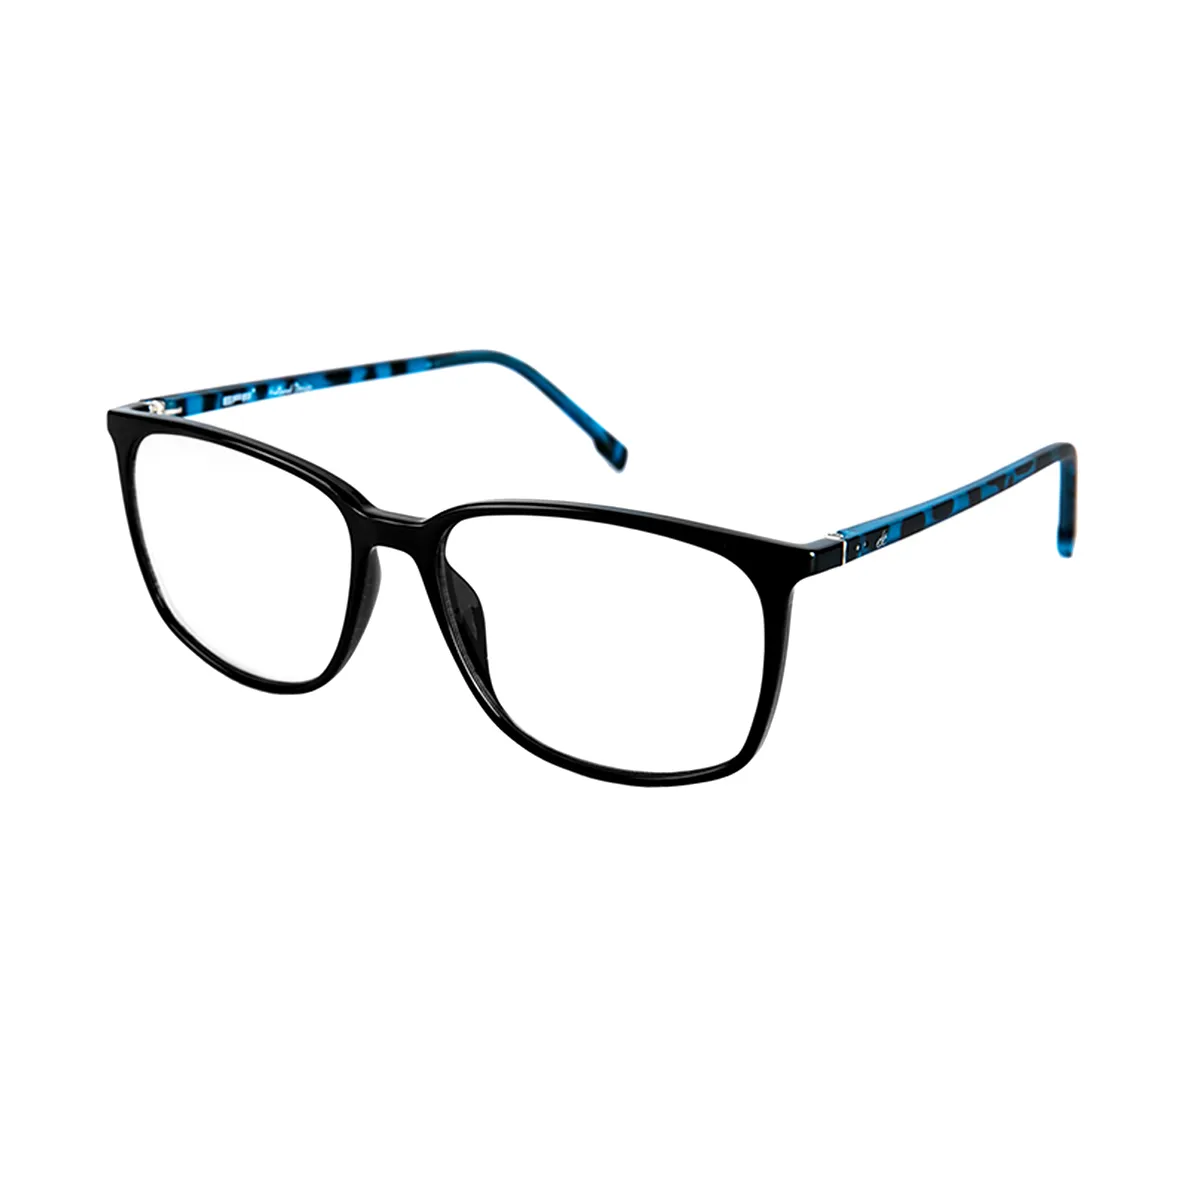 Cahill - Square Tortoiseshell-Blue Glasses for Men & Women - EFE